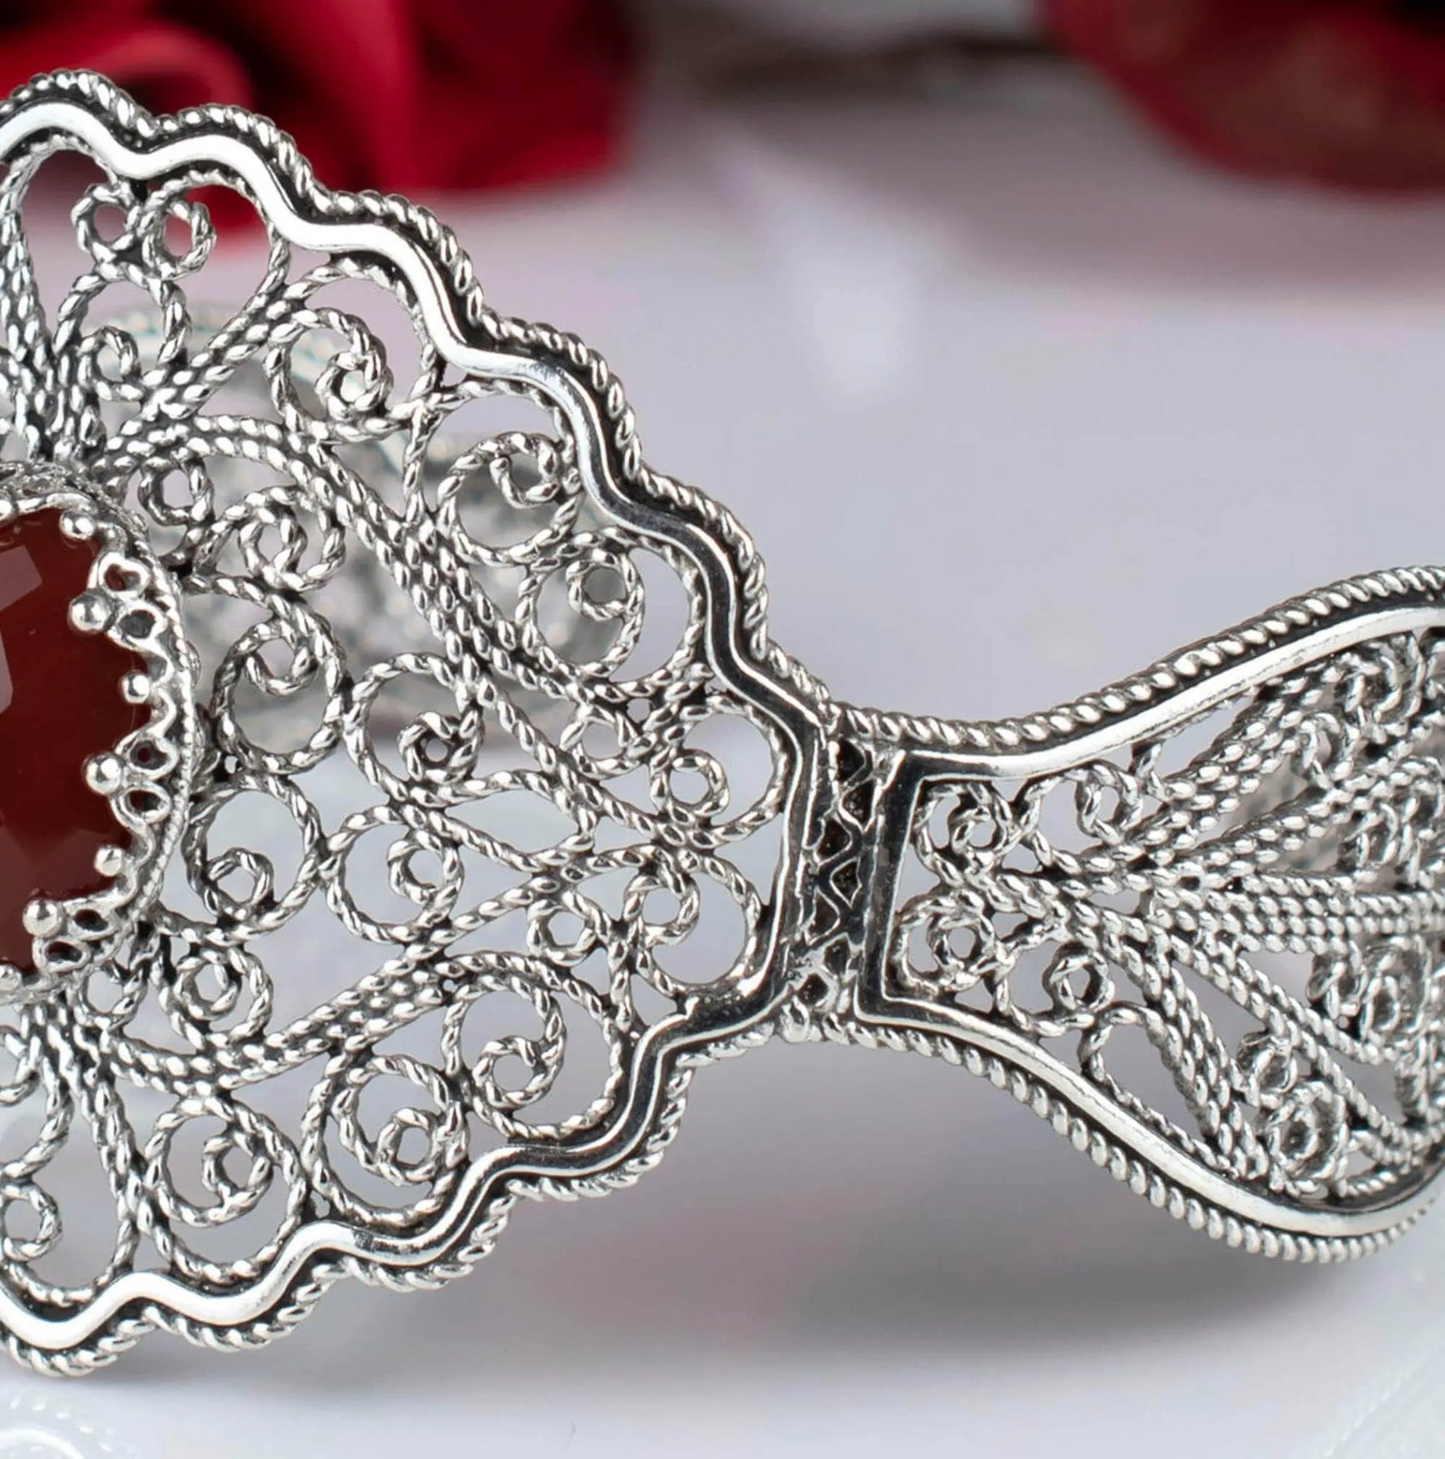 Filigree Art Carnelian Gemstone Lace Detailed Women Silver Cuff Bracelet